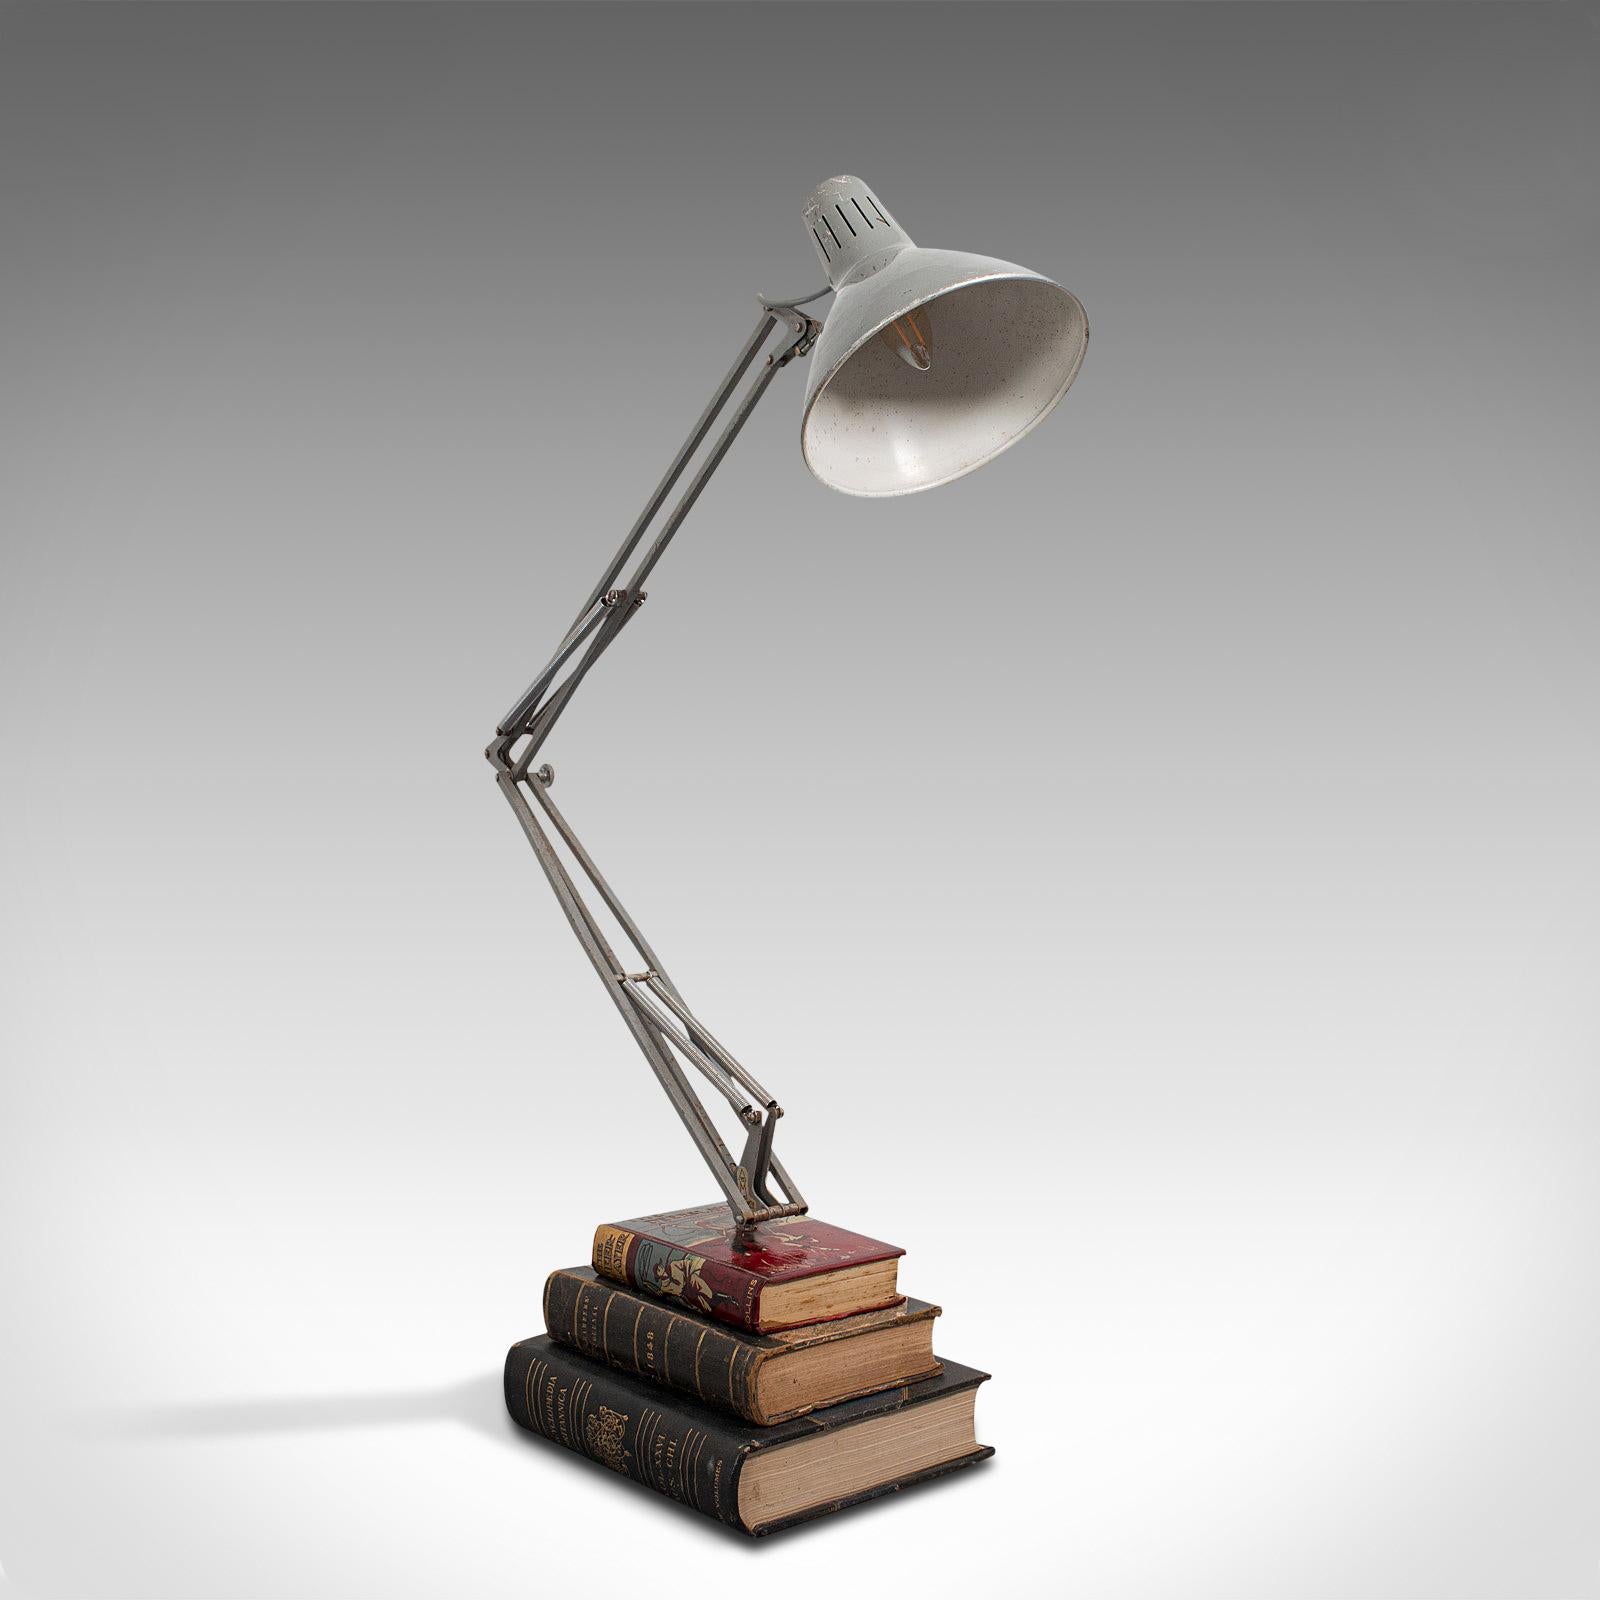 Dies ist eine Vintage-Winkelspiegellampe. Englische Schreibtischleuchte oder Architektenleuchte aus Stahl und Aluminium mit bibliophilem Sockel aus der Mitte des 20. Jahrhunderts, um 1960.

Angenehm montierte Lampe für den Bibliophilen
Mit